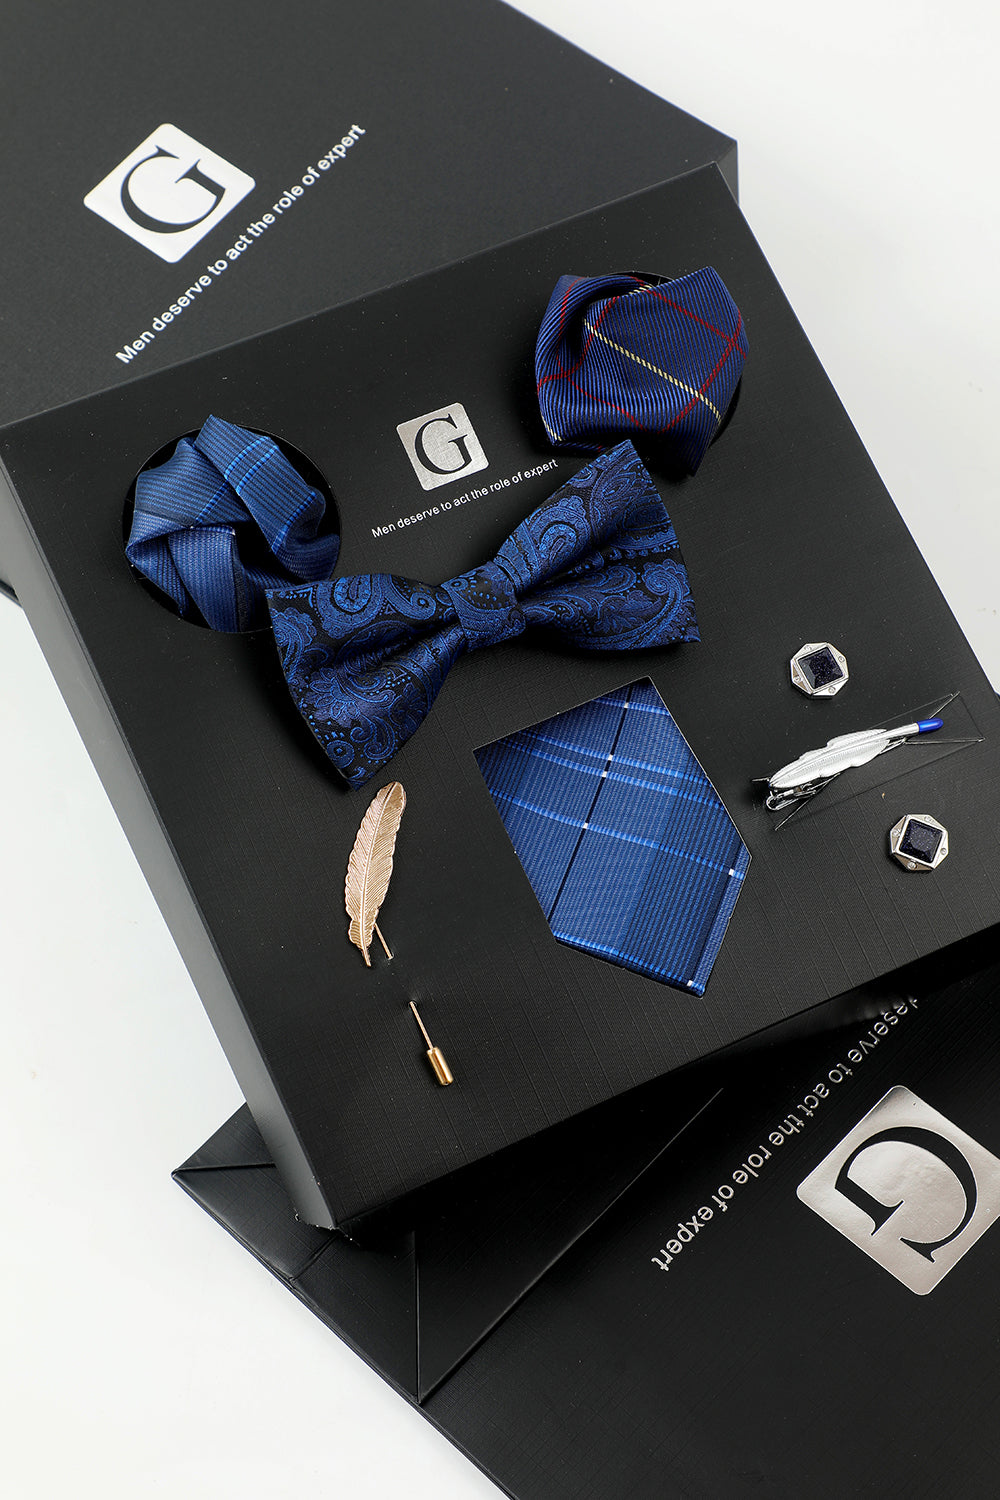 Royal Blue Men’s Accessory Set Tie et Jacquard Bow Tie Two Pocket Square Lapel Pin Tie Clip Boutons de manchette